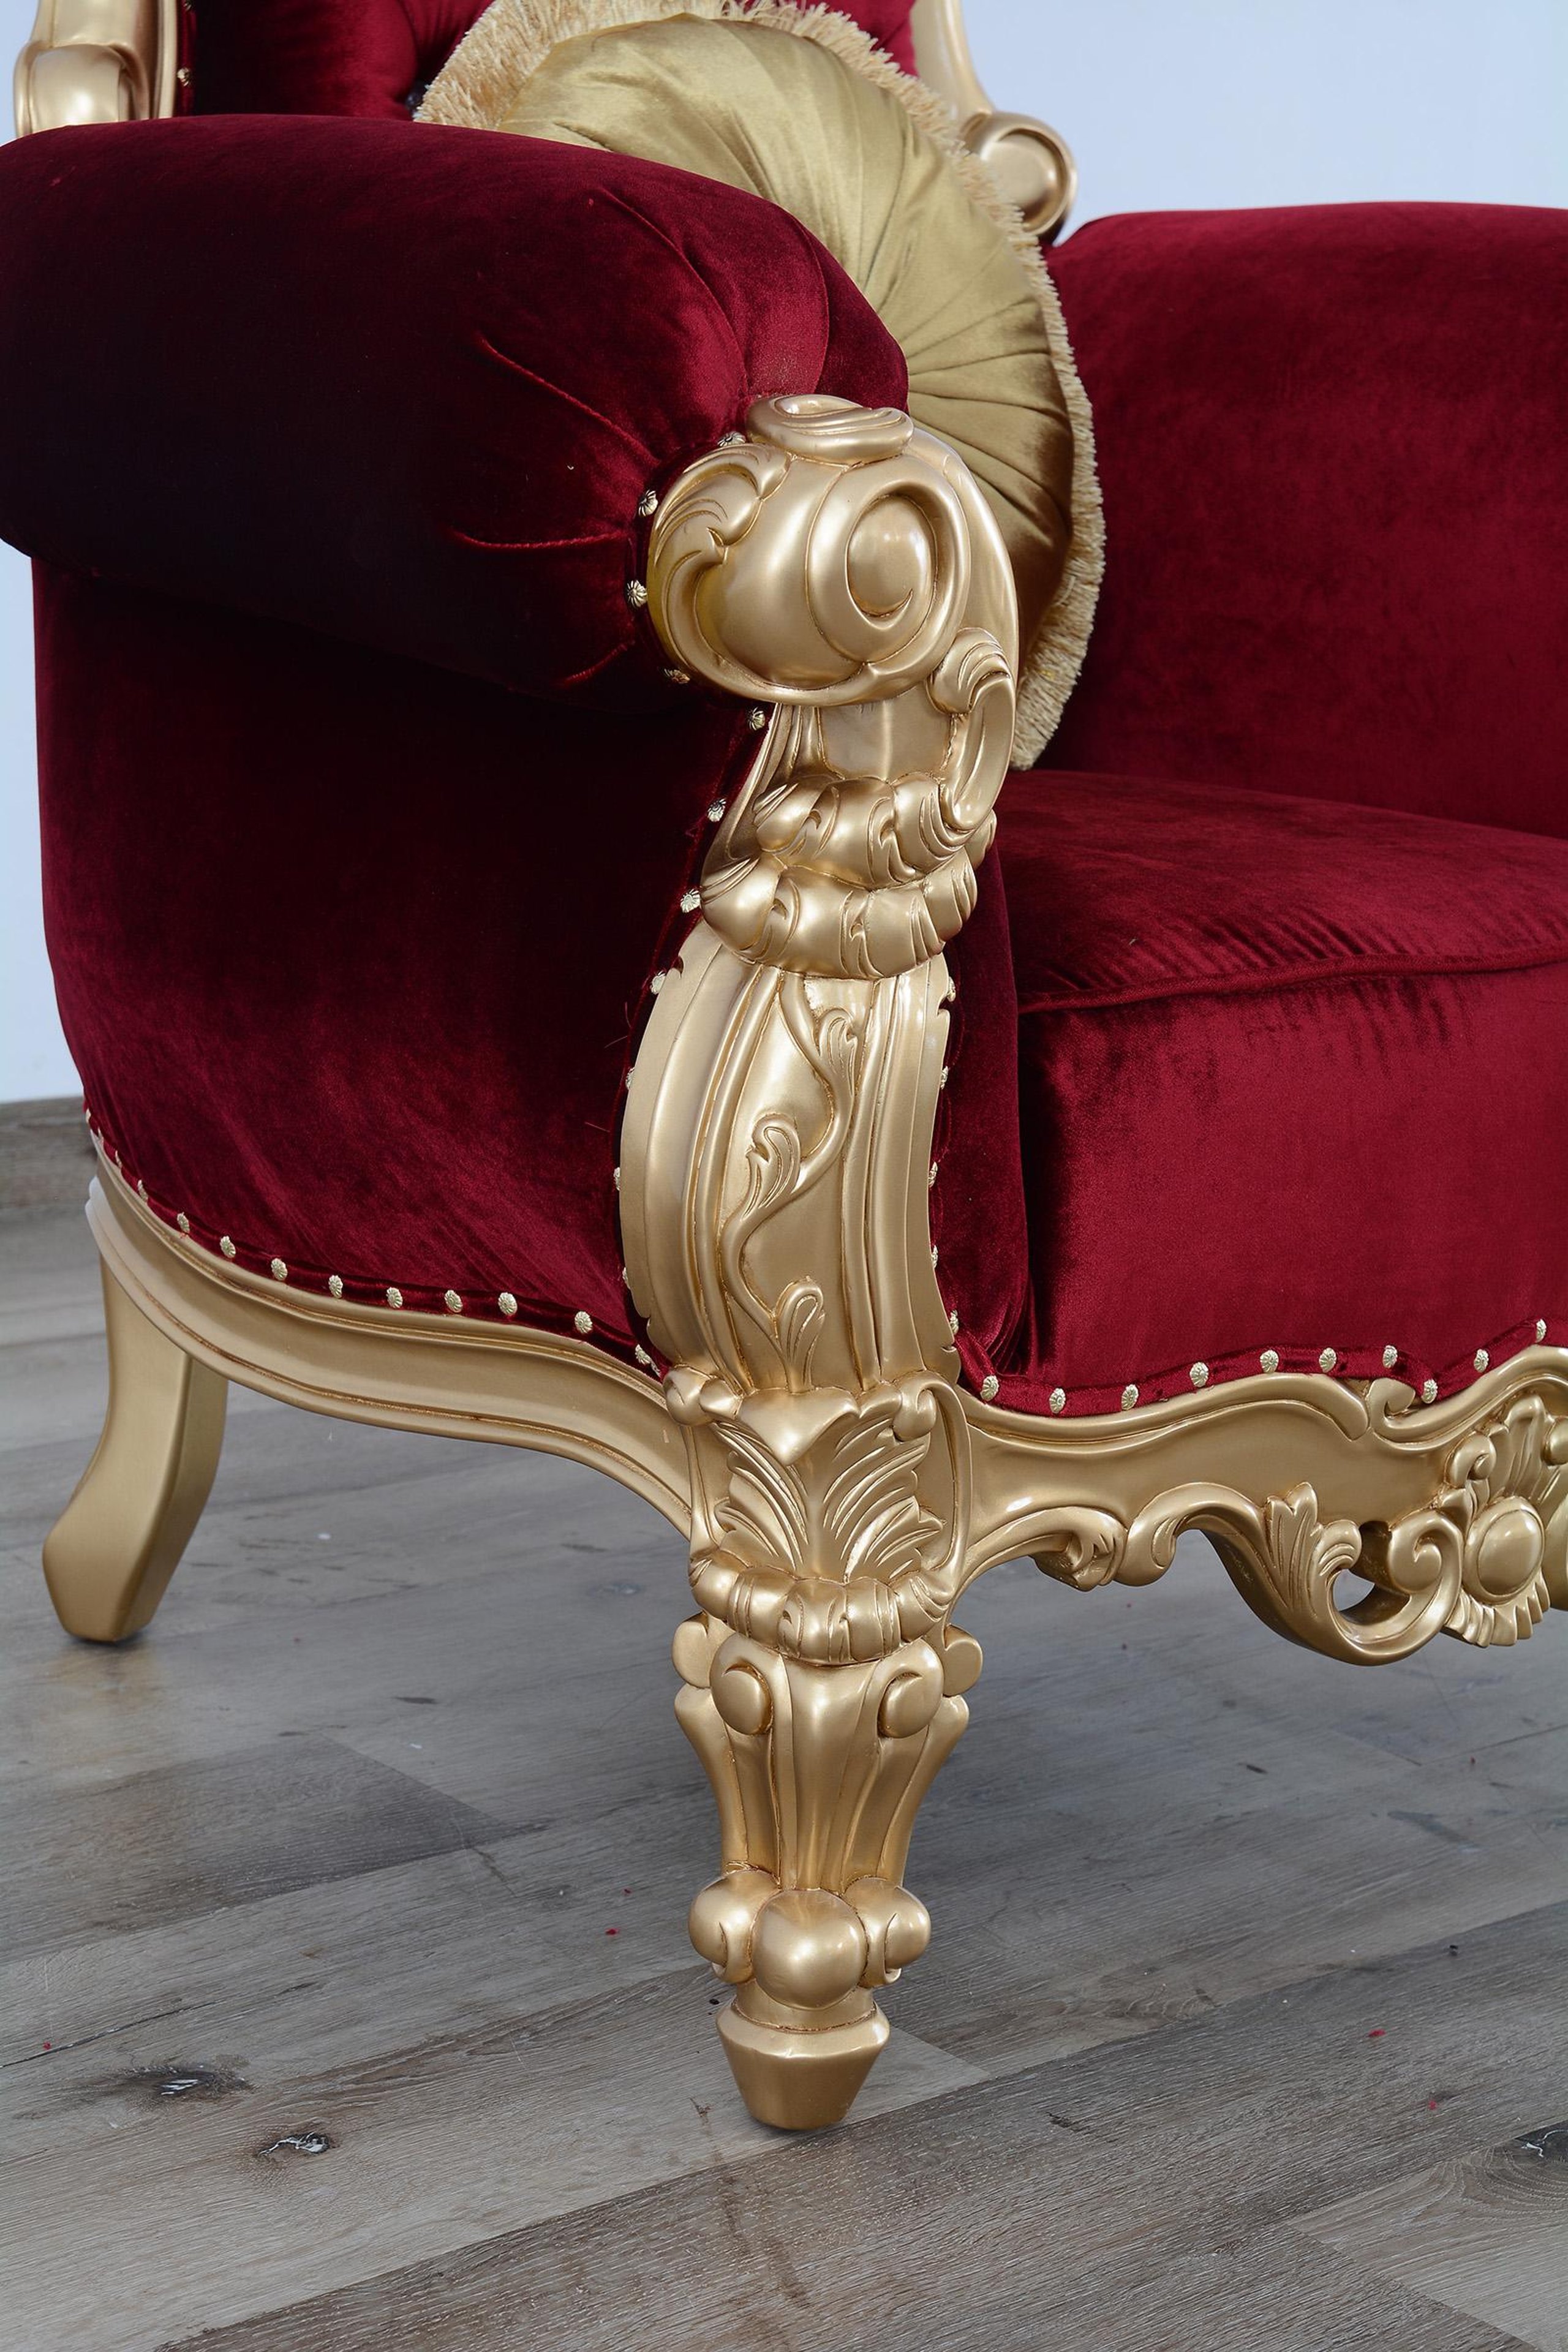 let Uenighed sovende Luxury Burgundy Red Velvet High Back Chair QUEEN ELIZABETH EUROPEAN  FURNITURE – buy online on NY Furniture Outlet